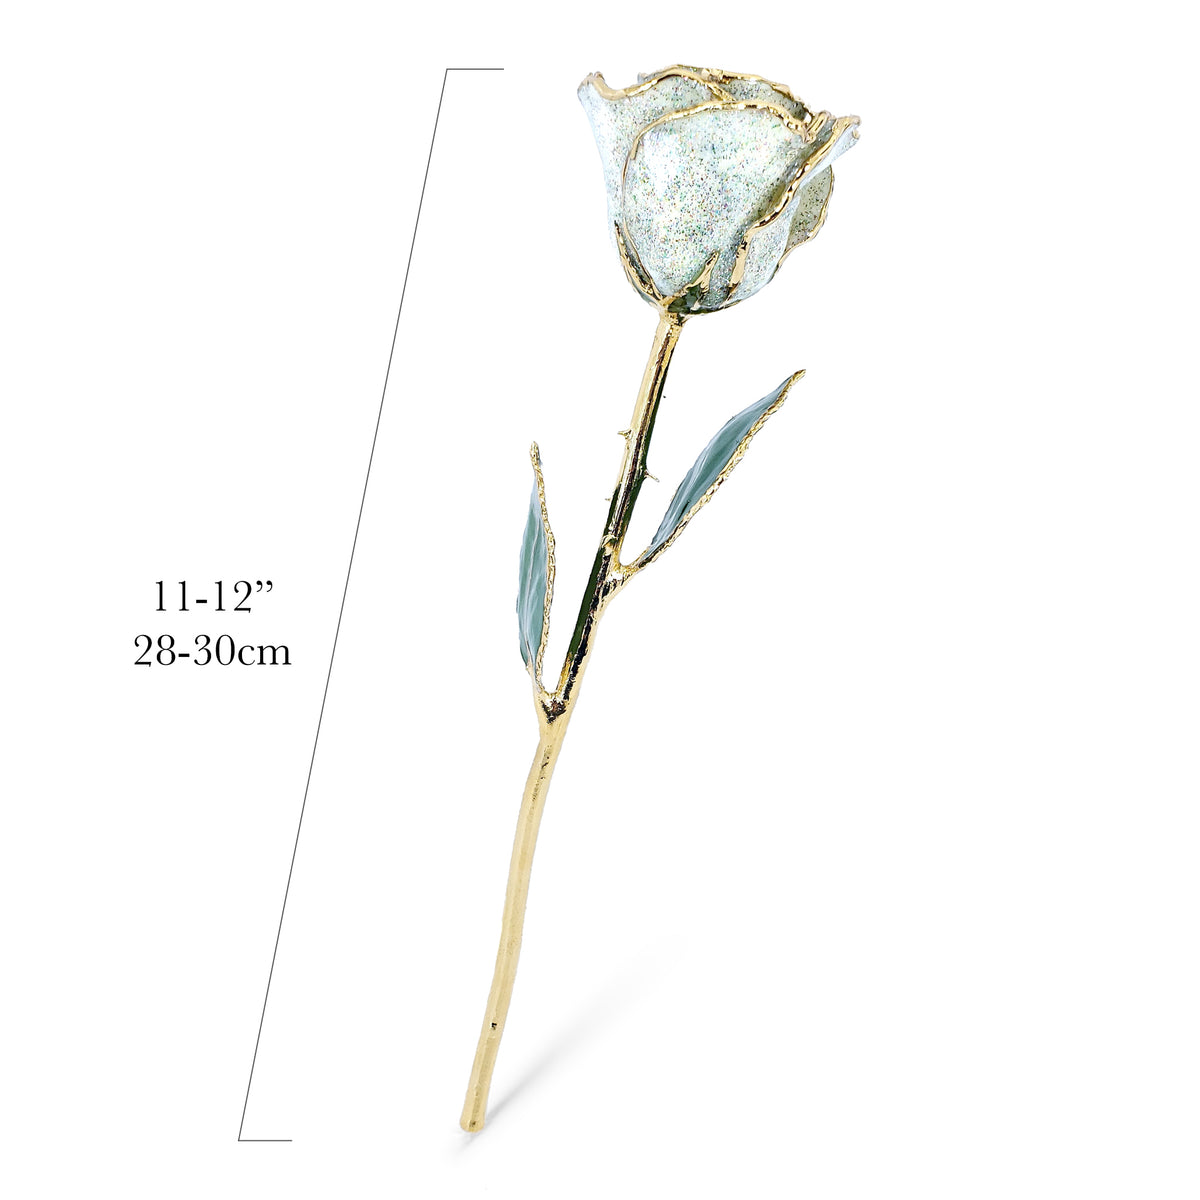 24K Gold Forever Rose - Opal Sparkle (October Birthstone)